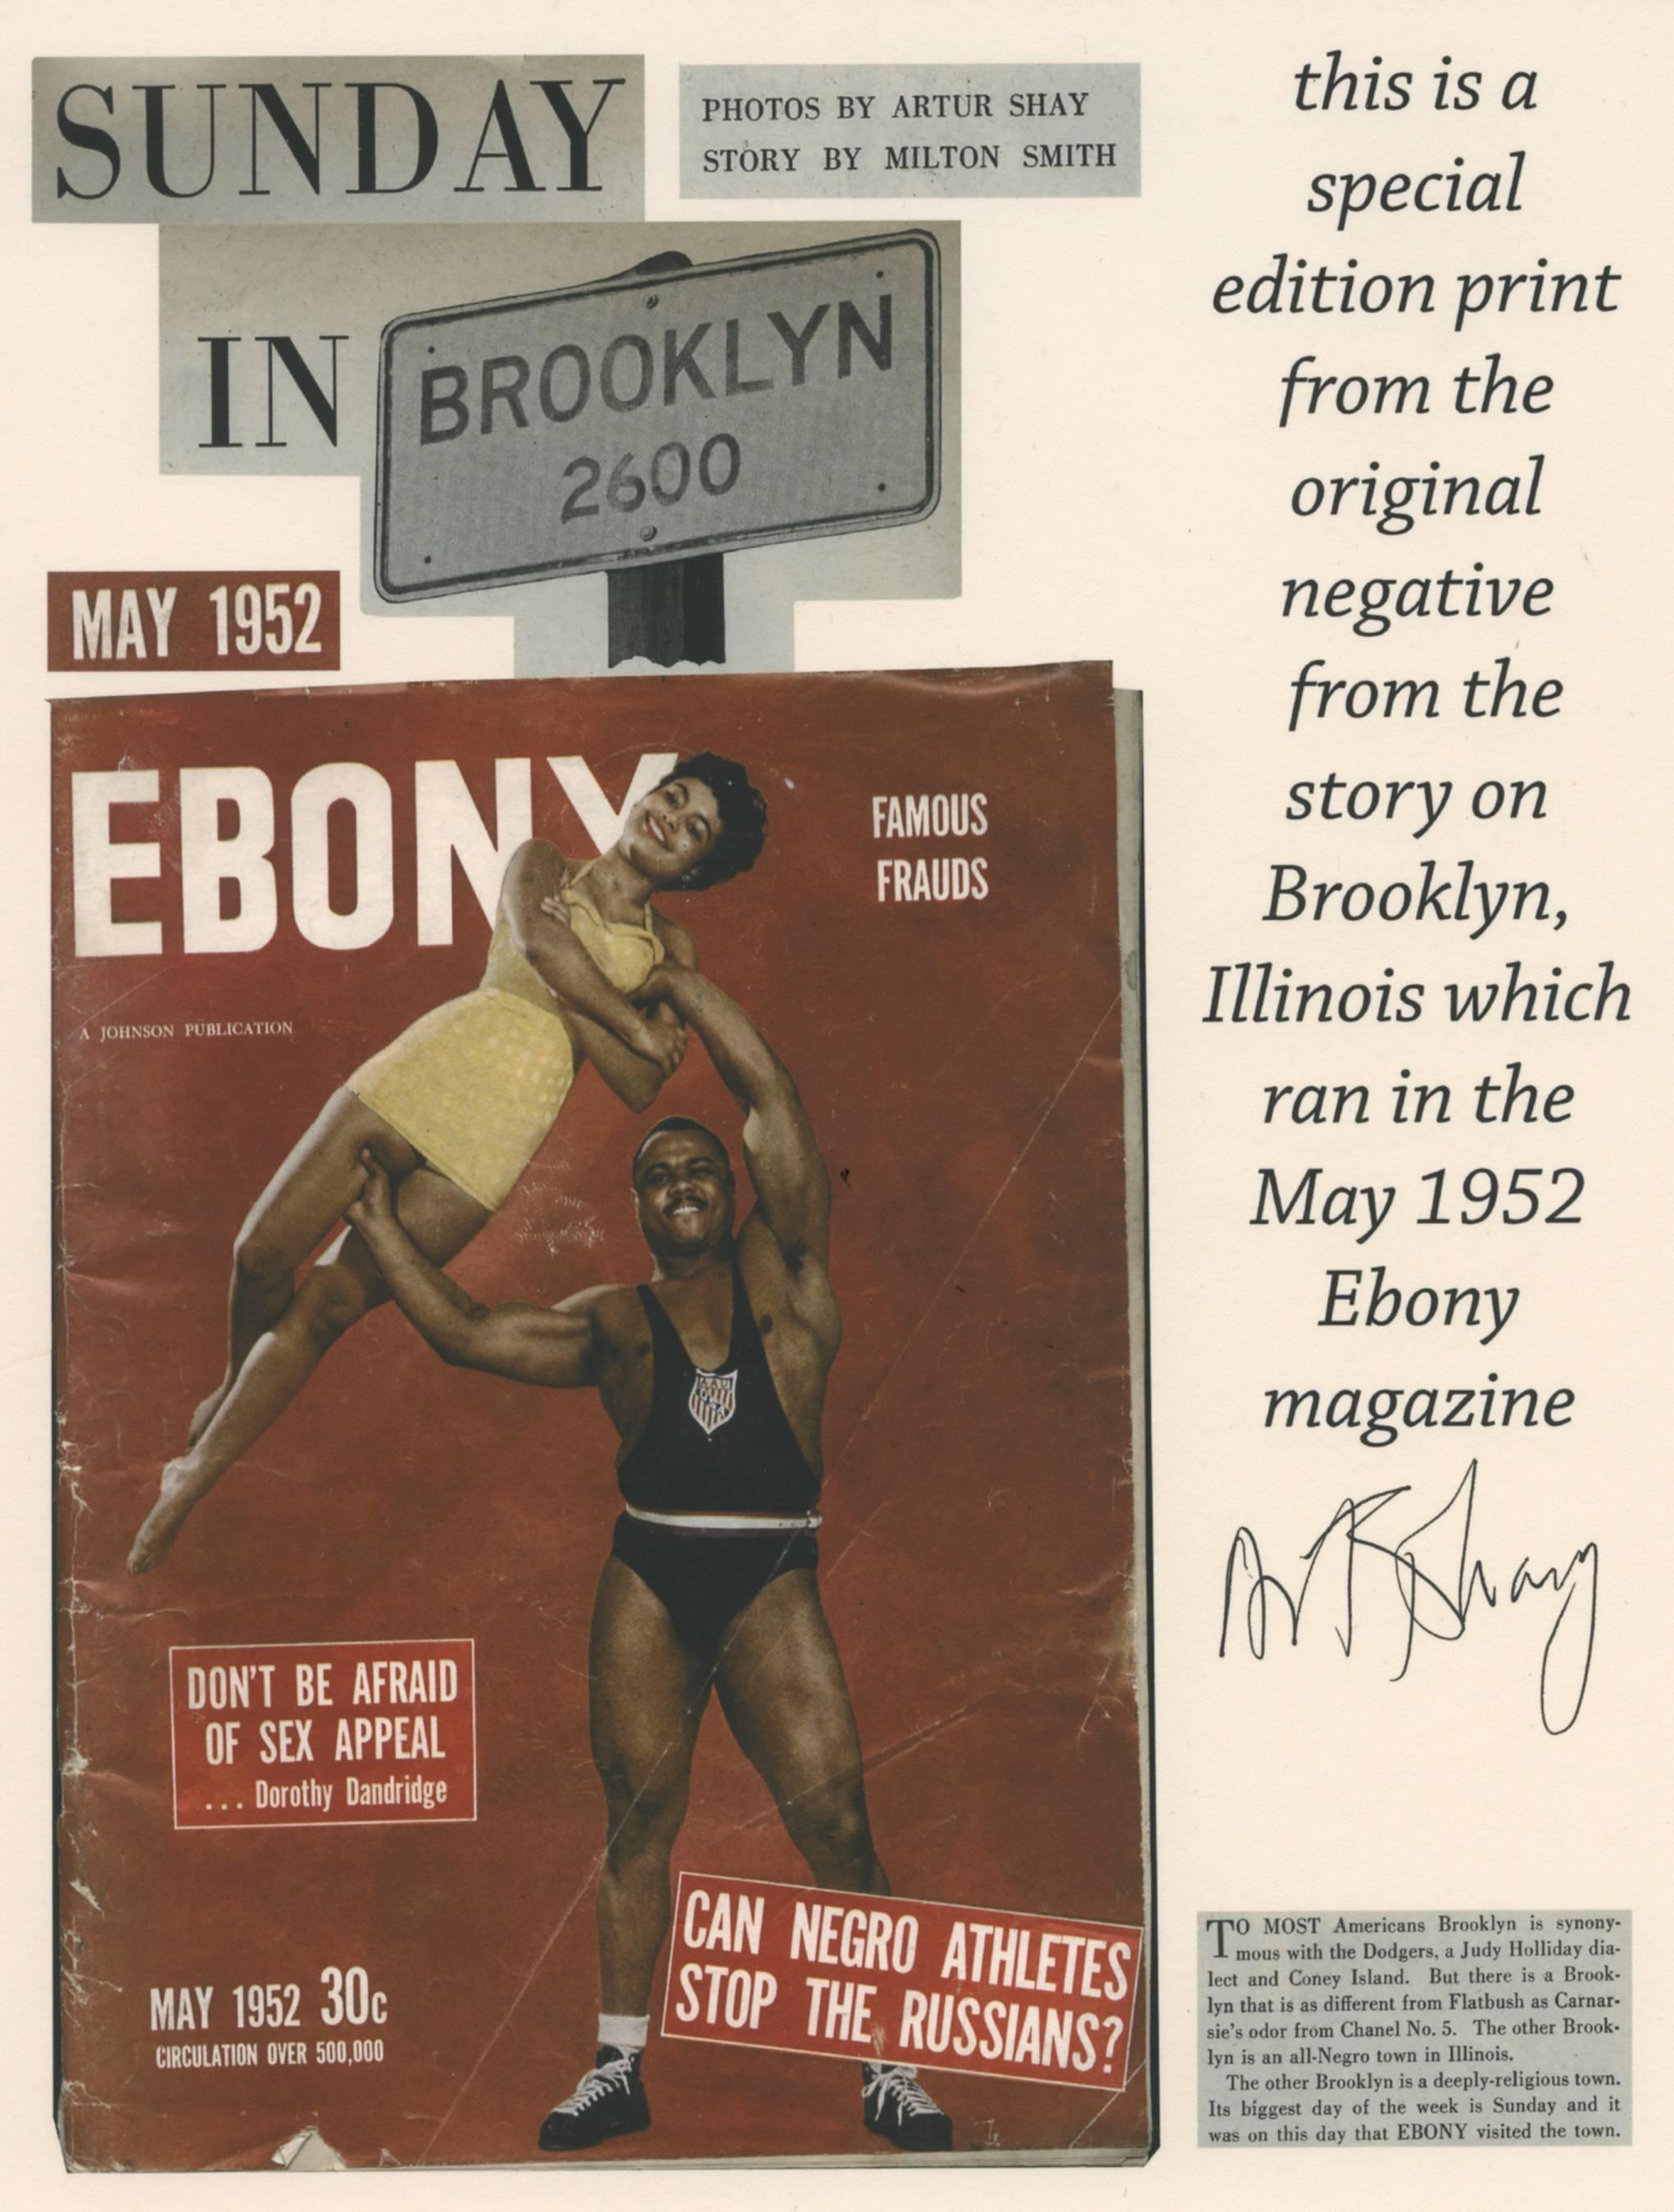 Lovejoy AKA Brooklyn, Illinois, Crossing the Street, for Ebony Magazine, 1952 - Photograph by Art Shay